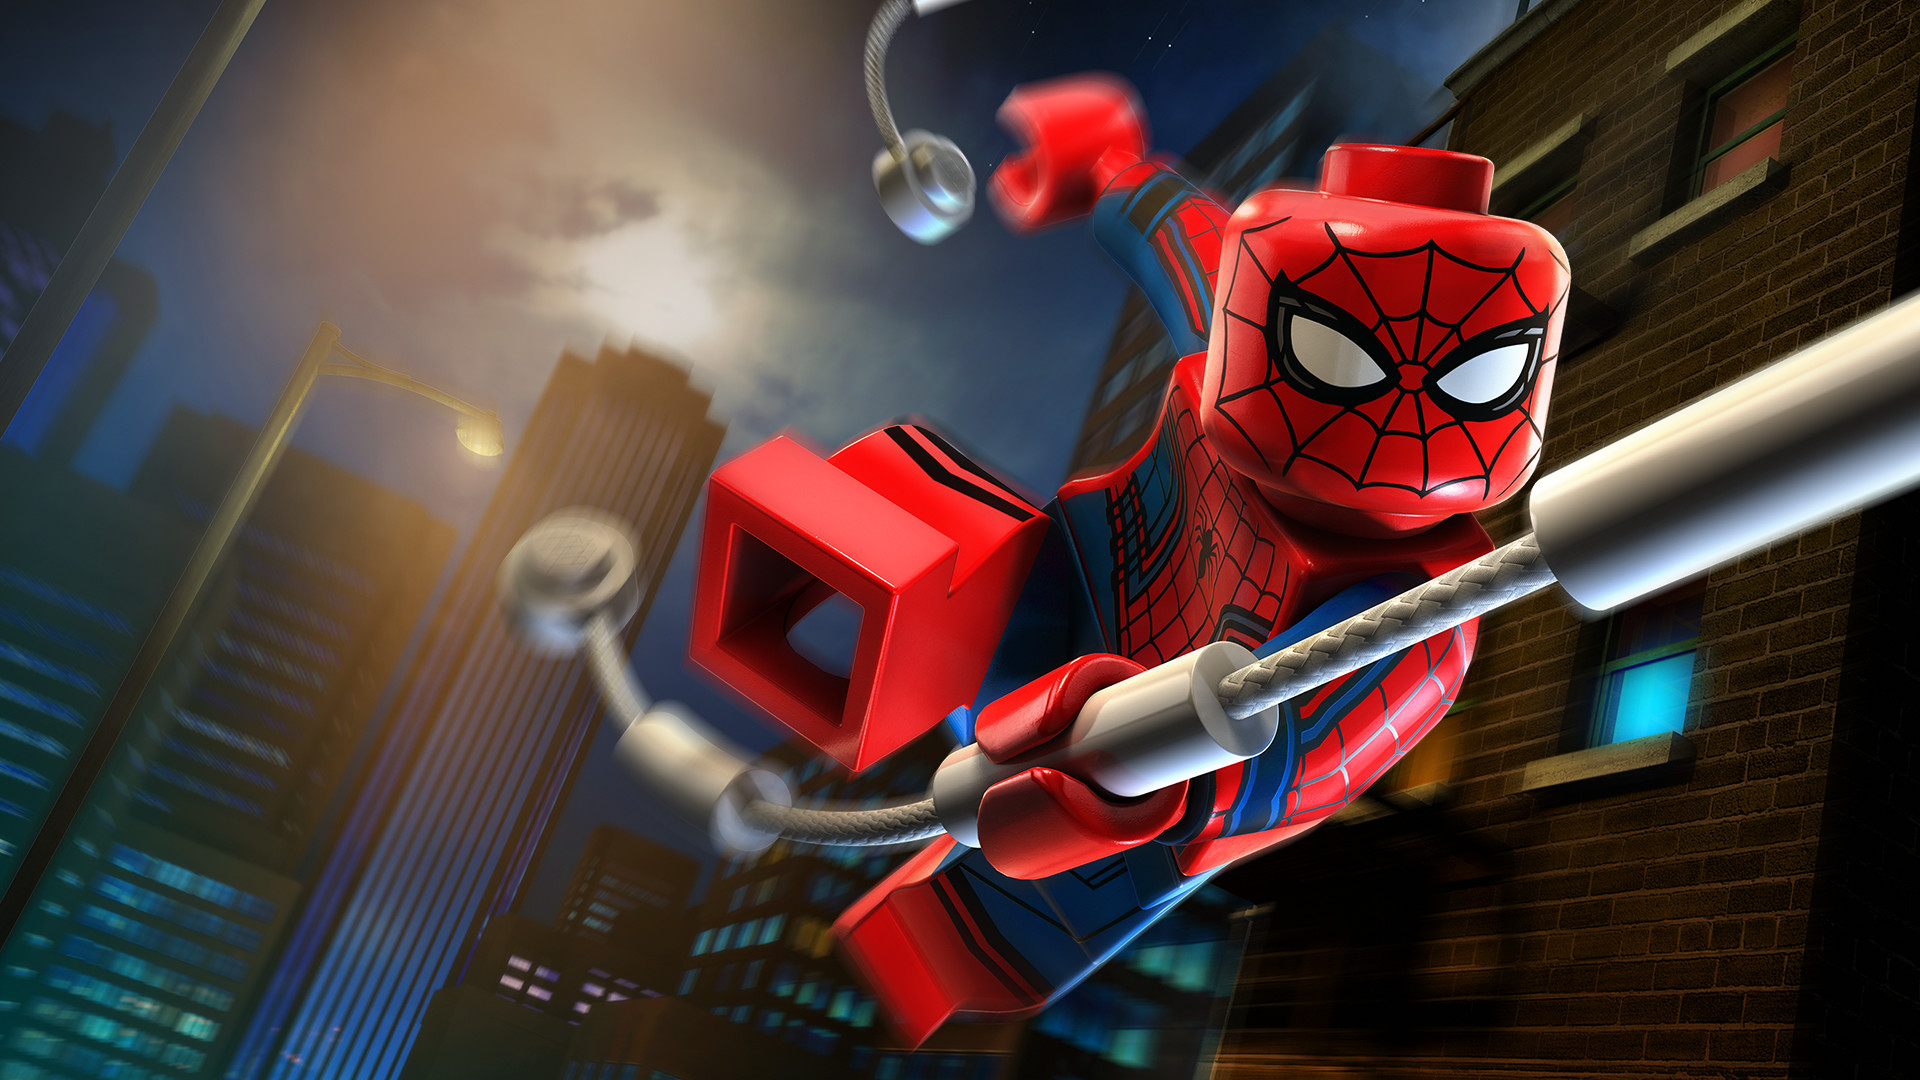 lego-marvel-s-avengers-dlc-spider-man-character-pack-on-steam